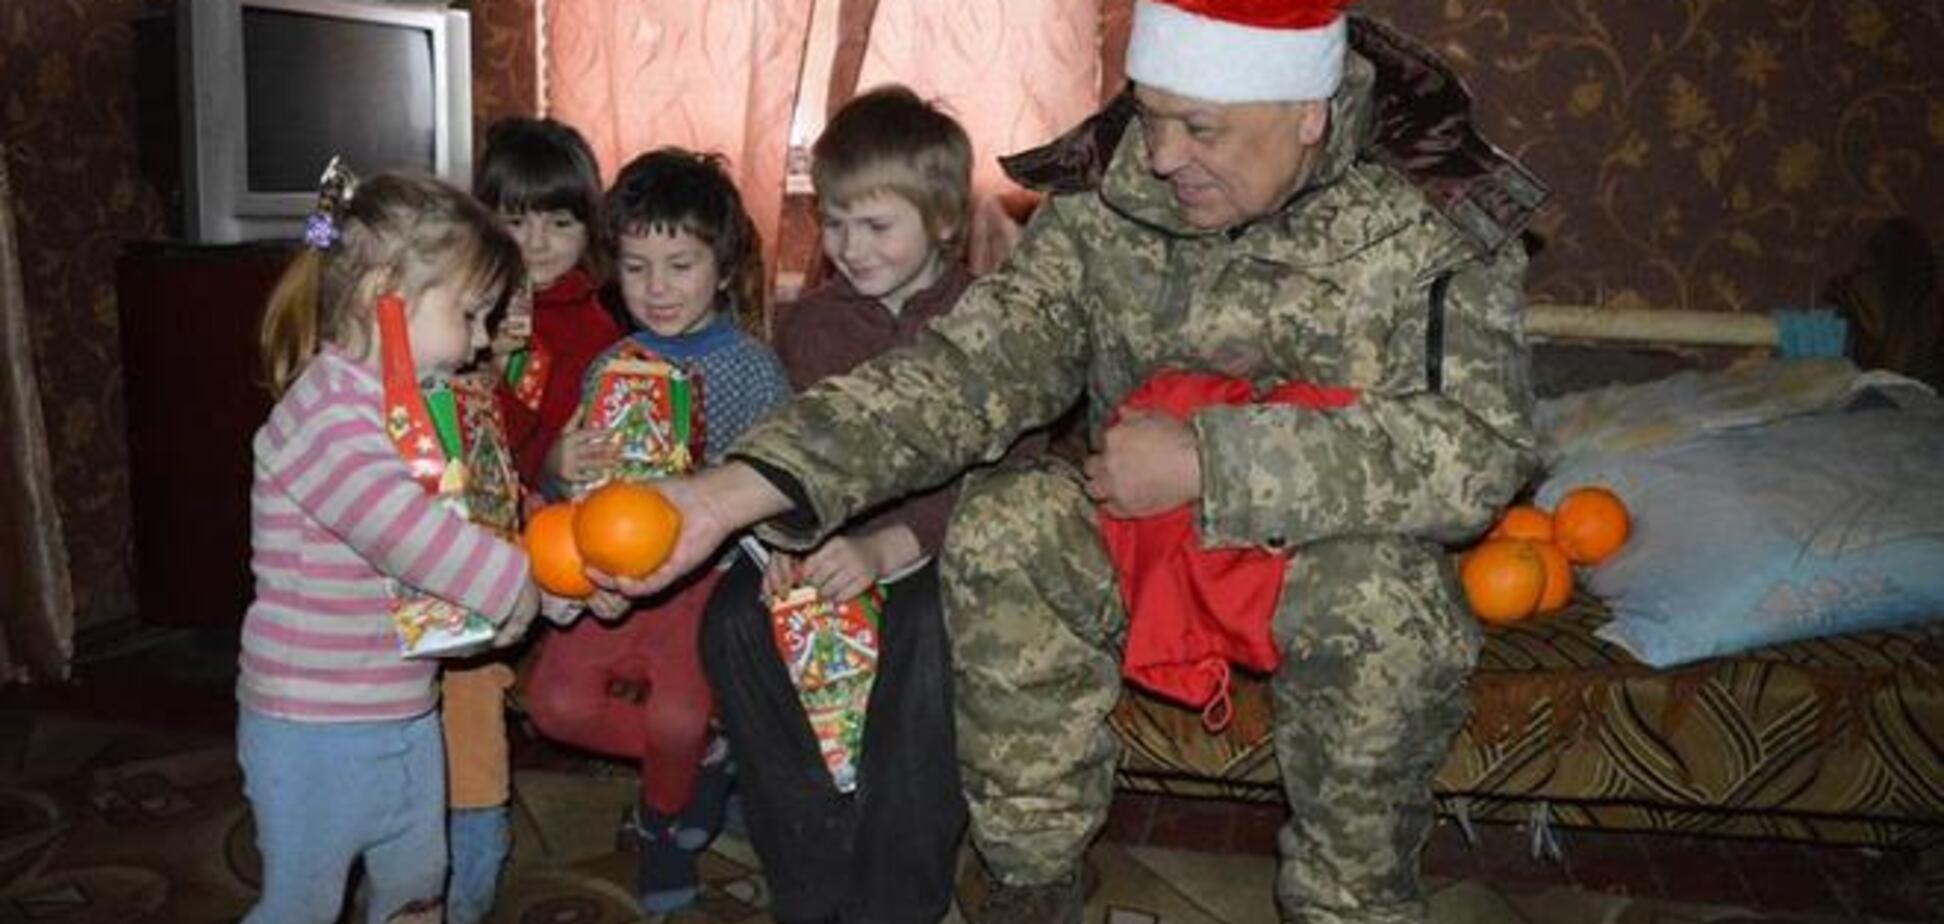 Появились фото, как Дед Мороз-Москаль пробрался мимо боевиков 'ЛНР' и накормил детей апельсинами